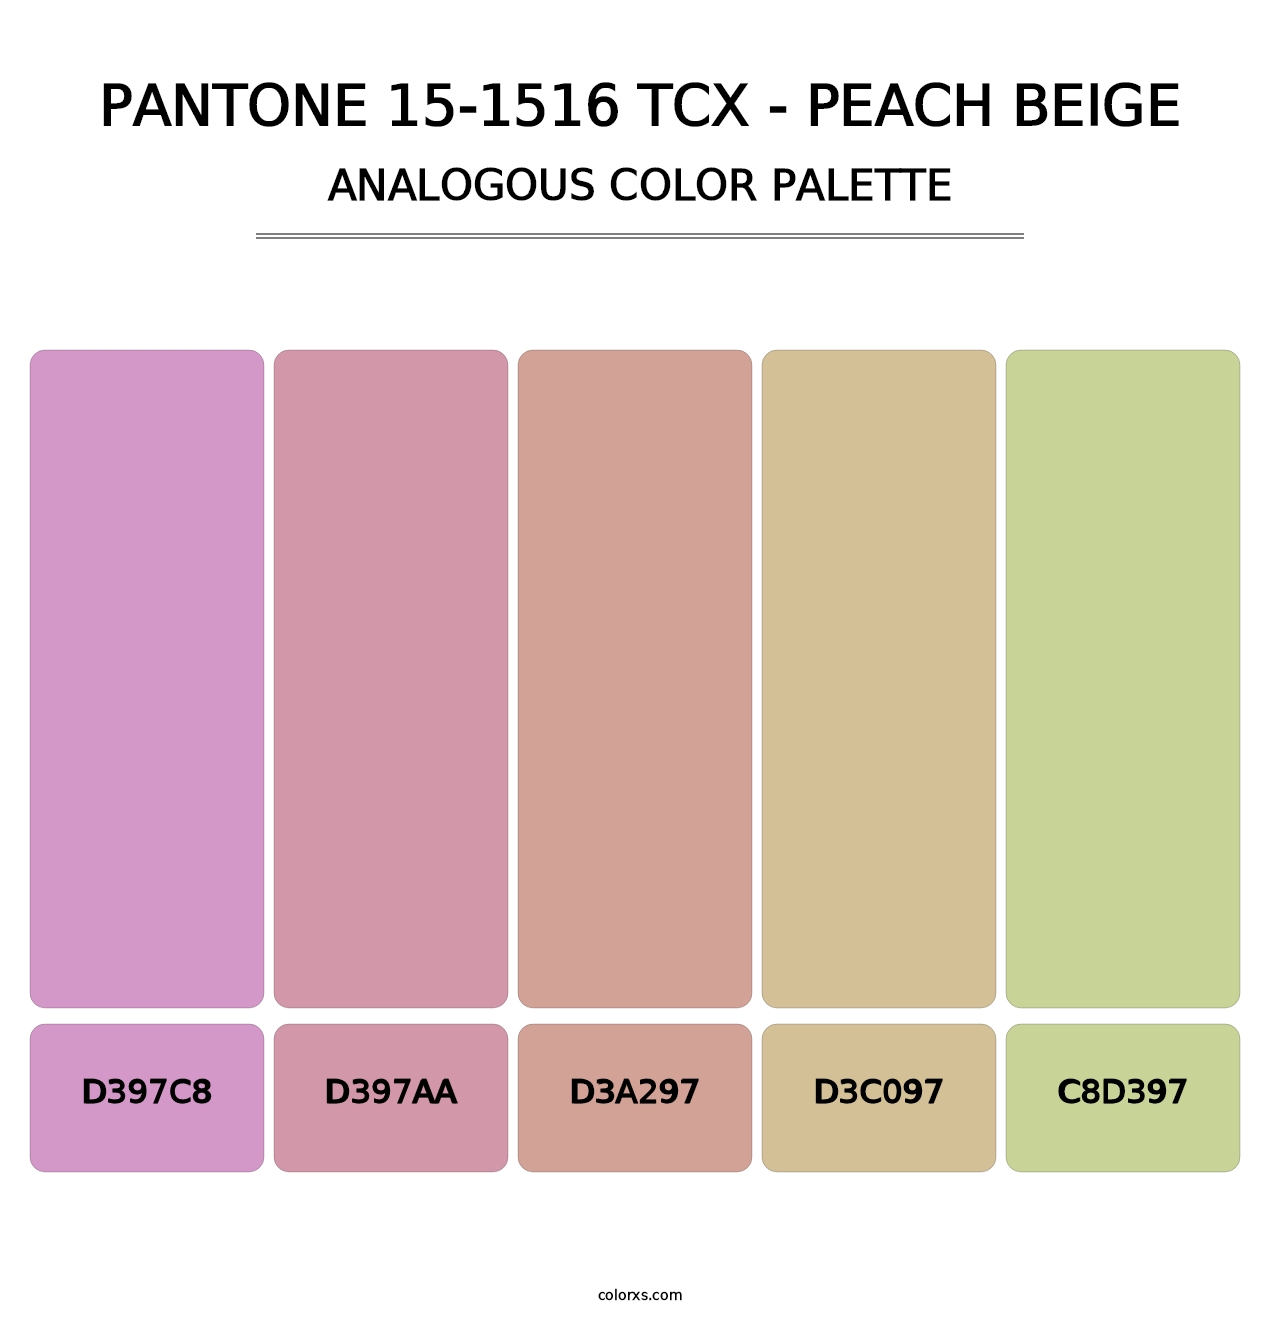 PANTONE 15-1516 TCX - Peach Beige - Analogous Color Palette